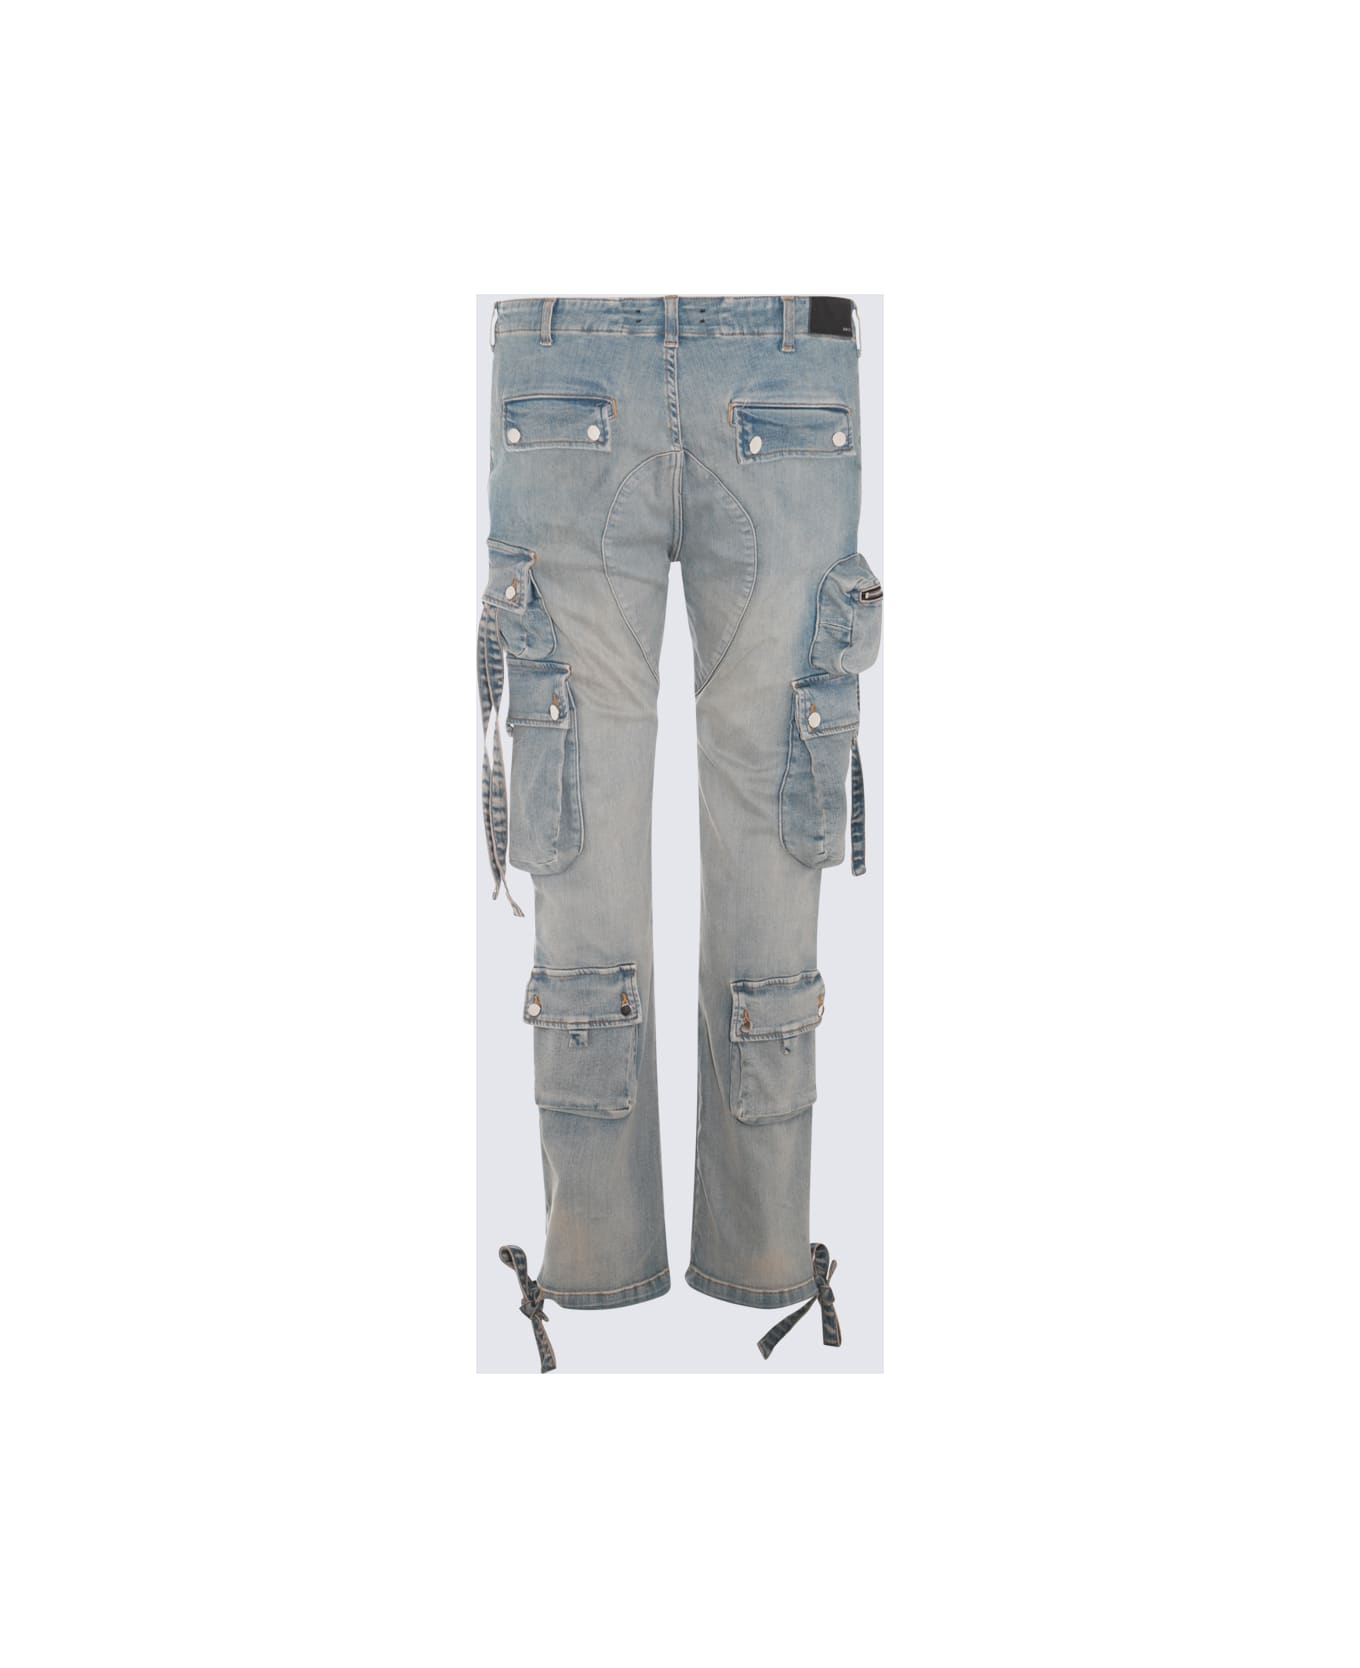 AMIRI Indigo Cotton Denim Jeans - Antique Indigo デニム